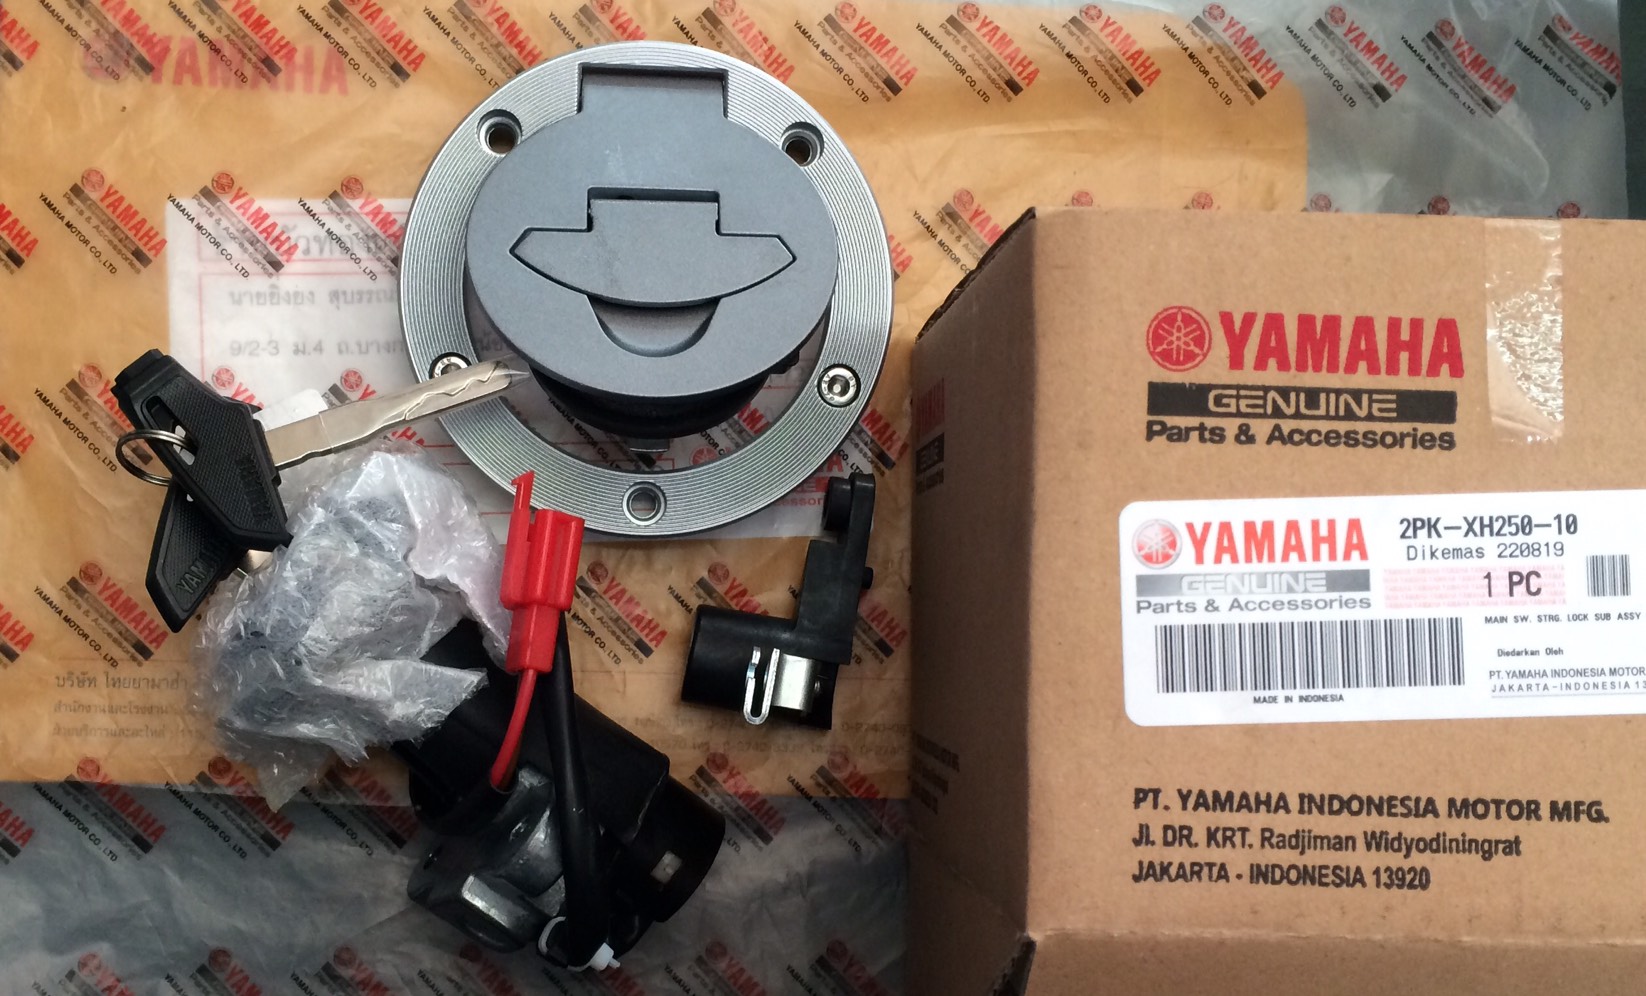 สวิทช์กุญแจ Yamaha R15 *ของแท้* รุ่นแรก สำหรับรถปี2014-2016 สวิทช์กุญแจมาพร้อมฝาถังน้ำมันและตัวล็อคเบาะ